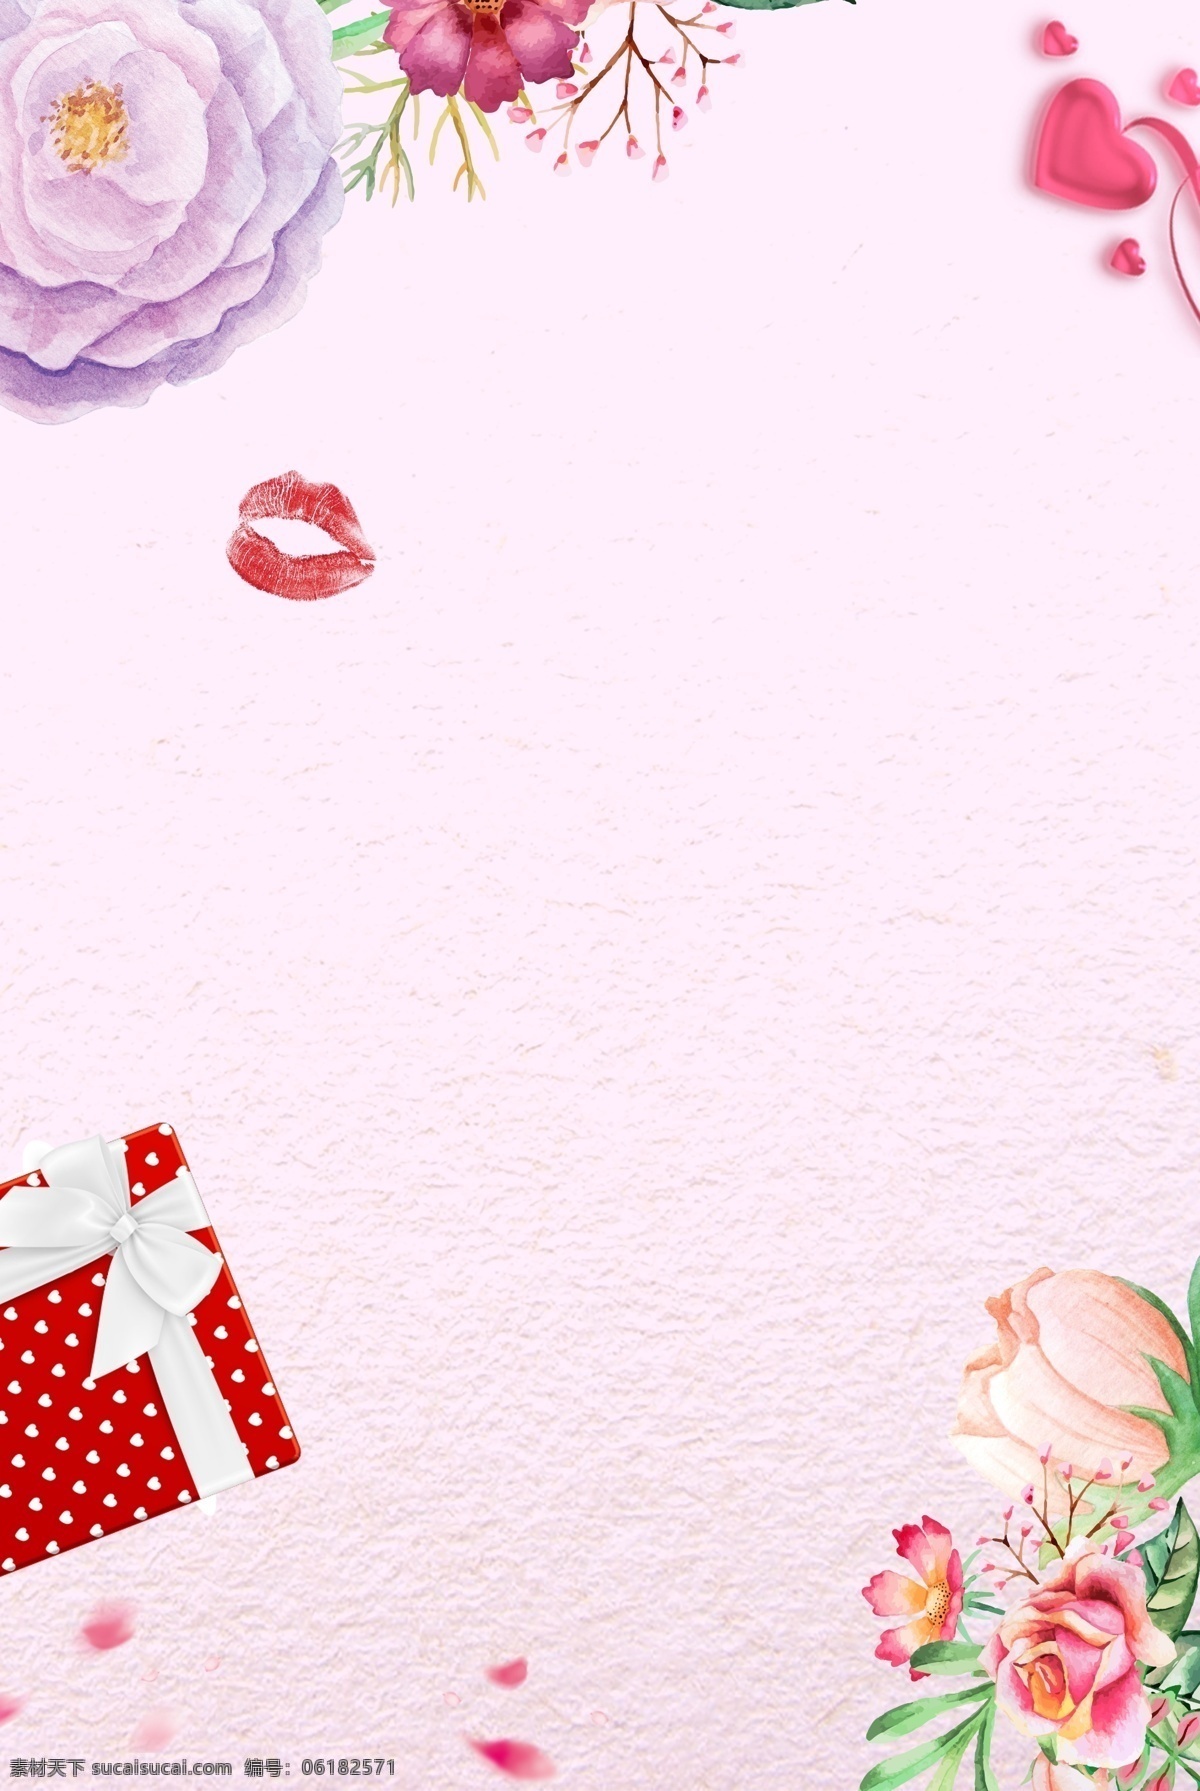 七夕 情人节 活动 海报 促销 活动宣传 浪漫 温馨 简约 小清新 花朵 礼盒